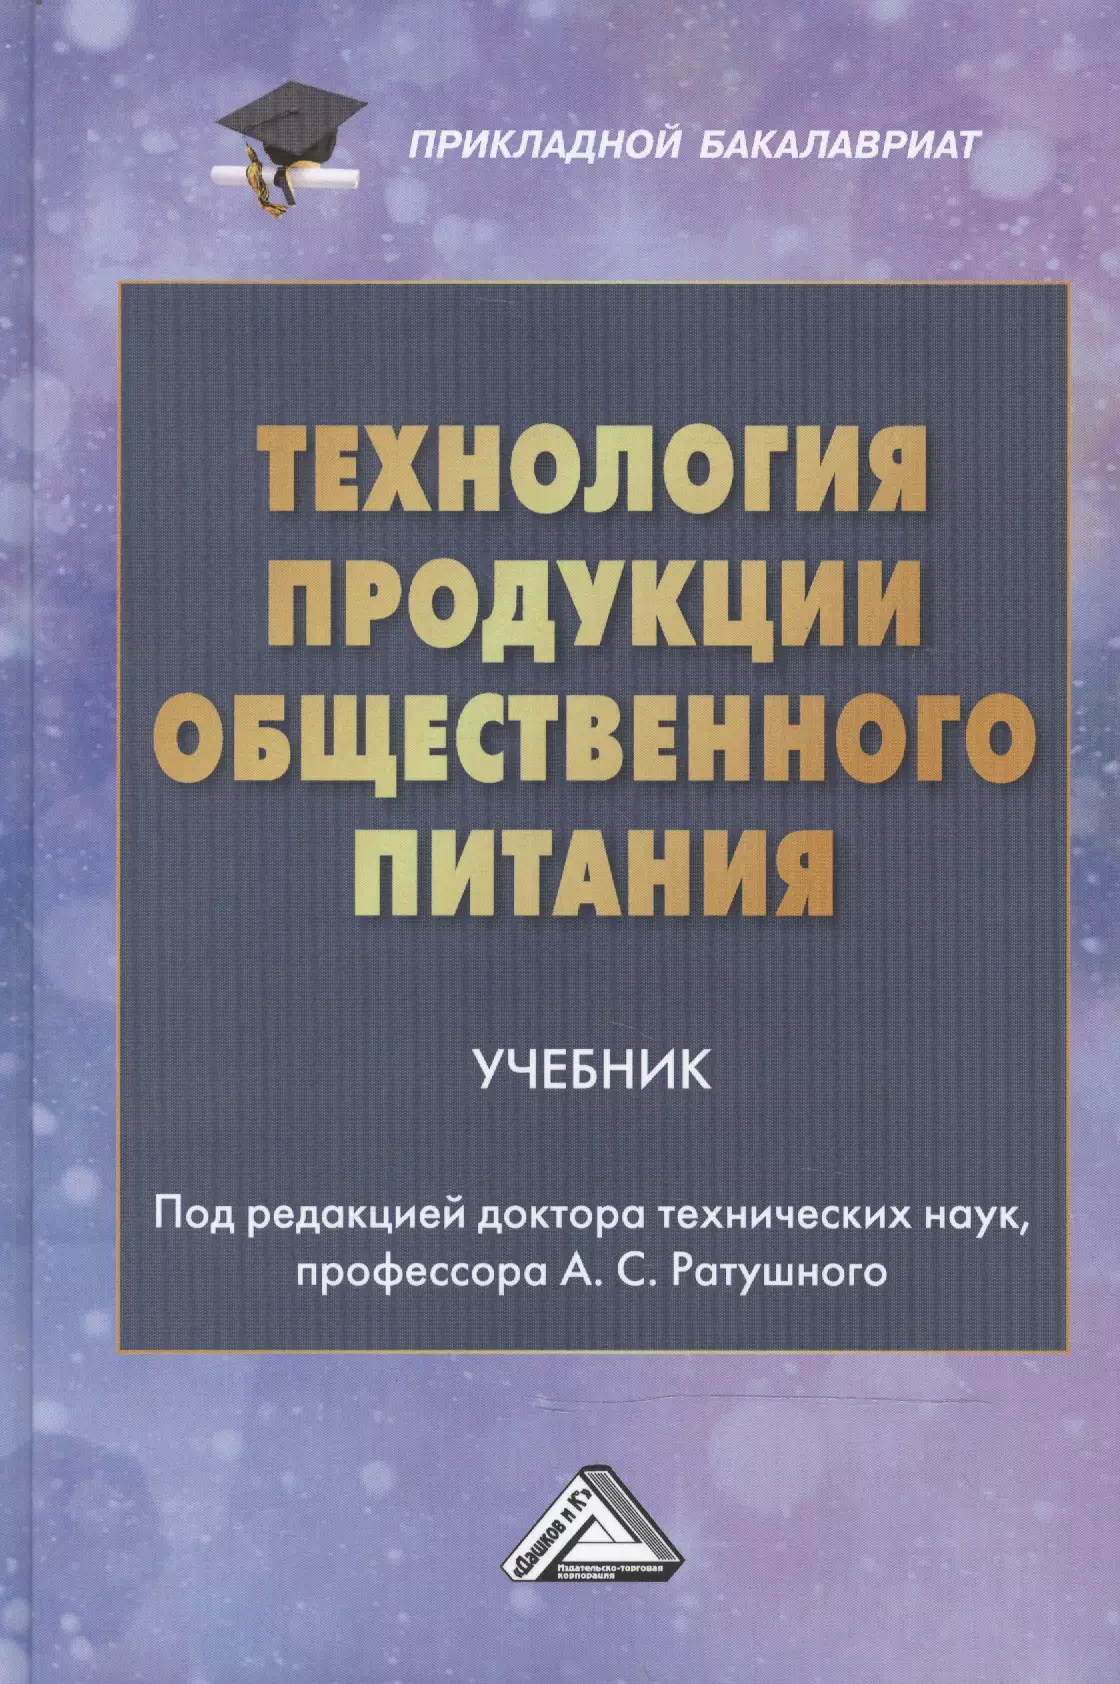 Ратушный Александр Сергеевич - Технология продукции общественного питания: Учебник для бакалавров